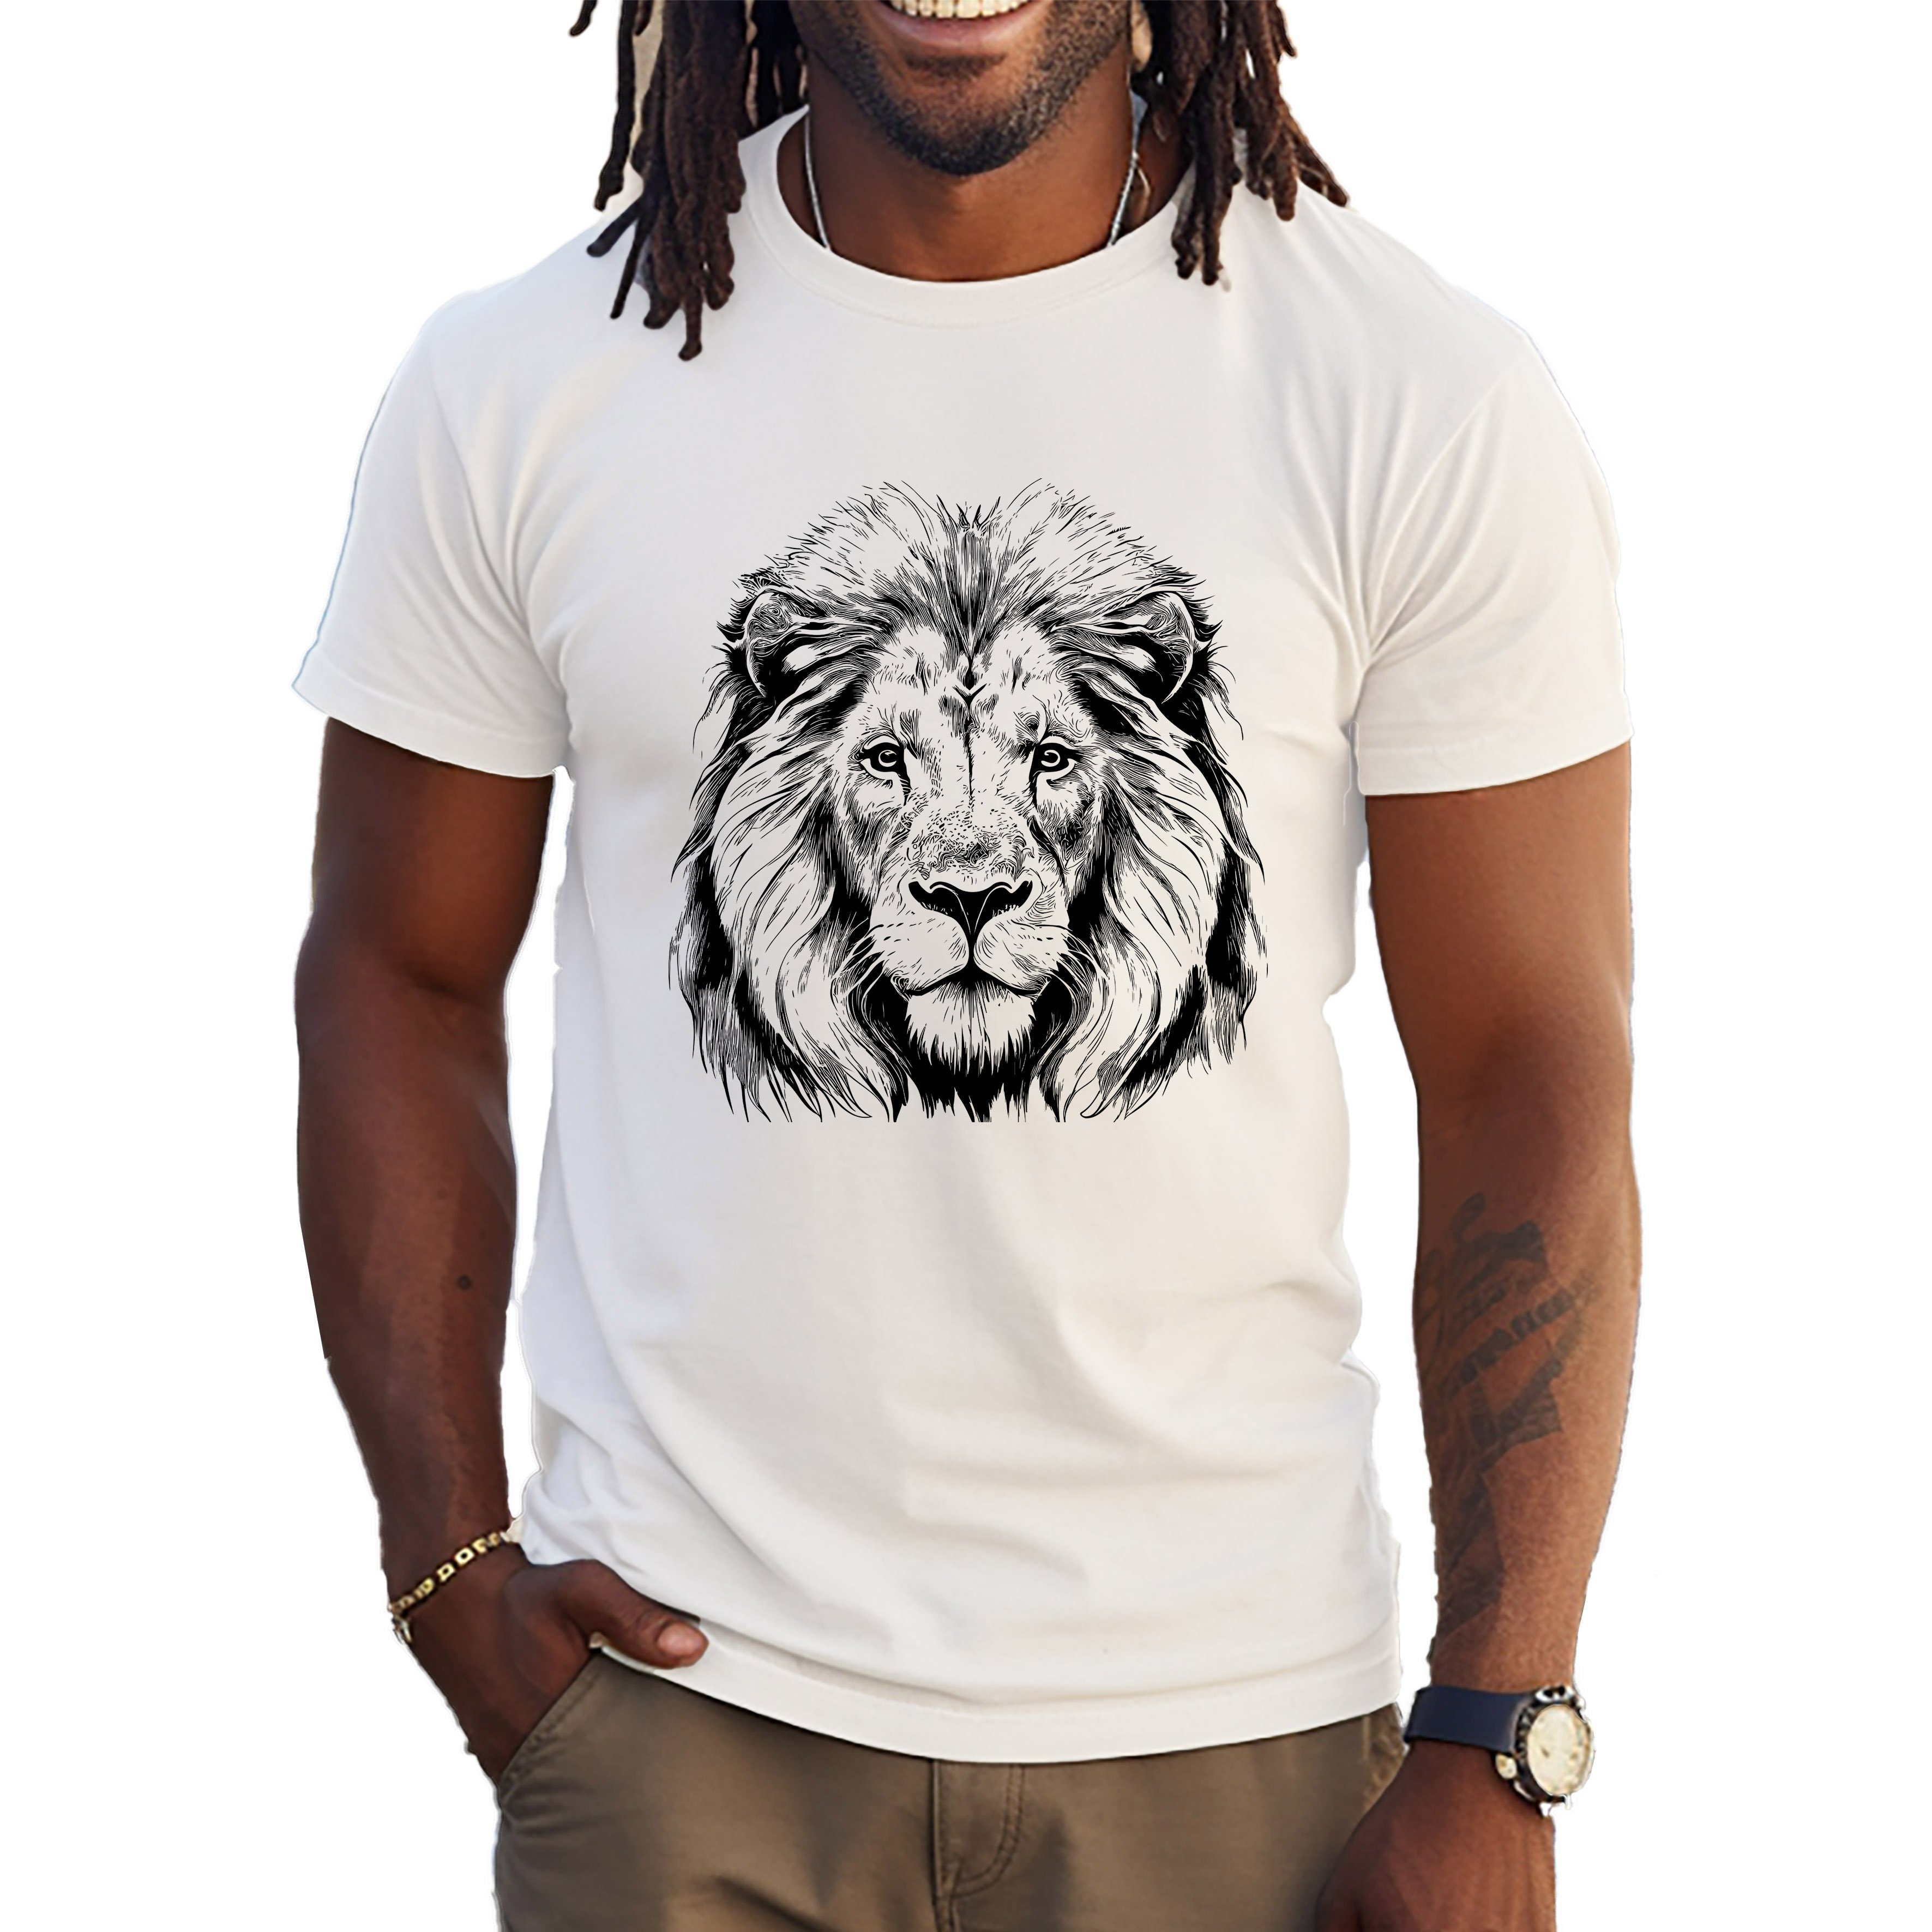 Banco T-Shirt Lion King of the Jungle 100% Baumwolle Sommer Summer Freizeit Löwe Weiß